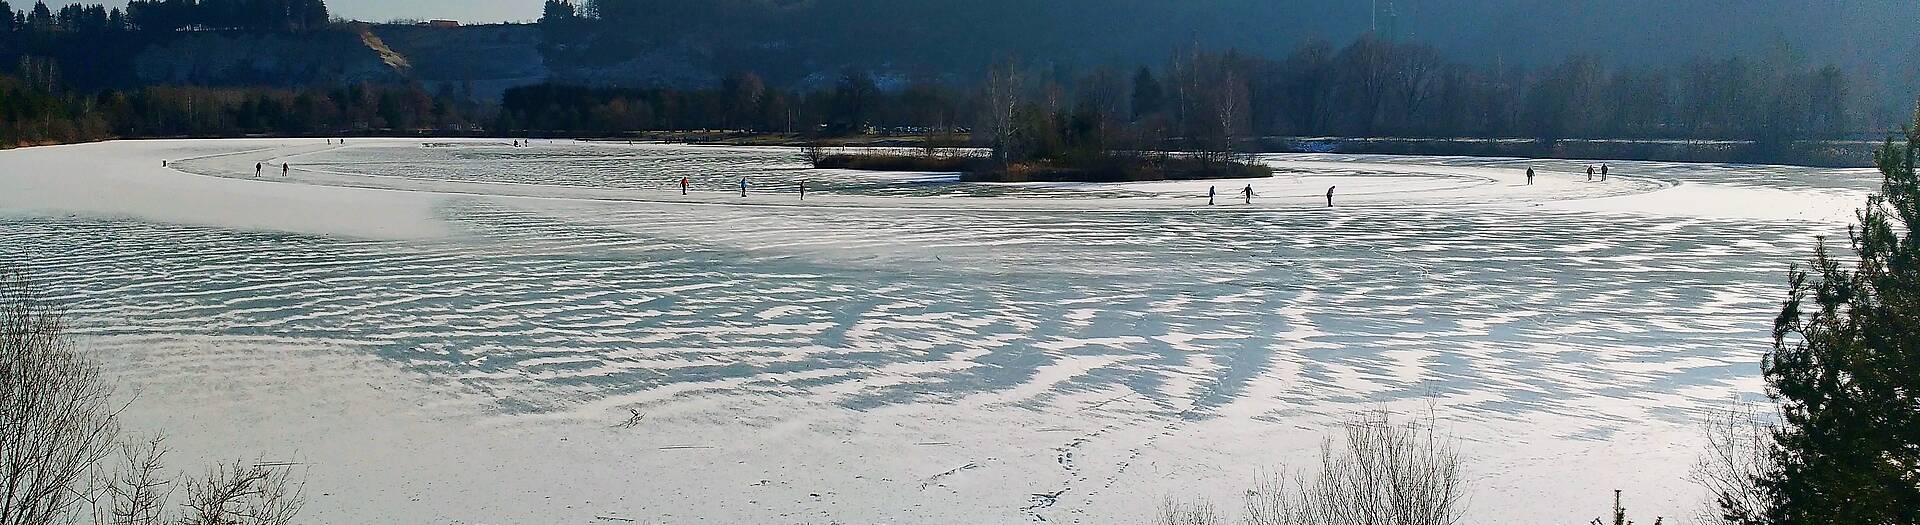 Eislaufen am Silbersee